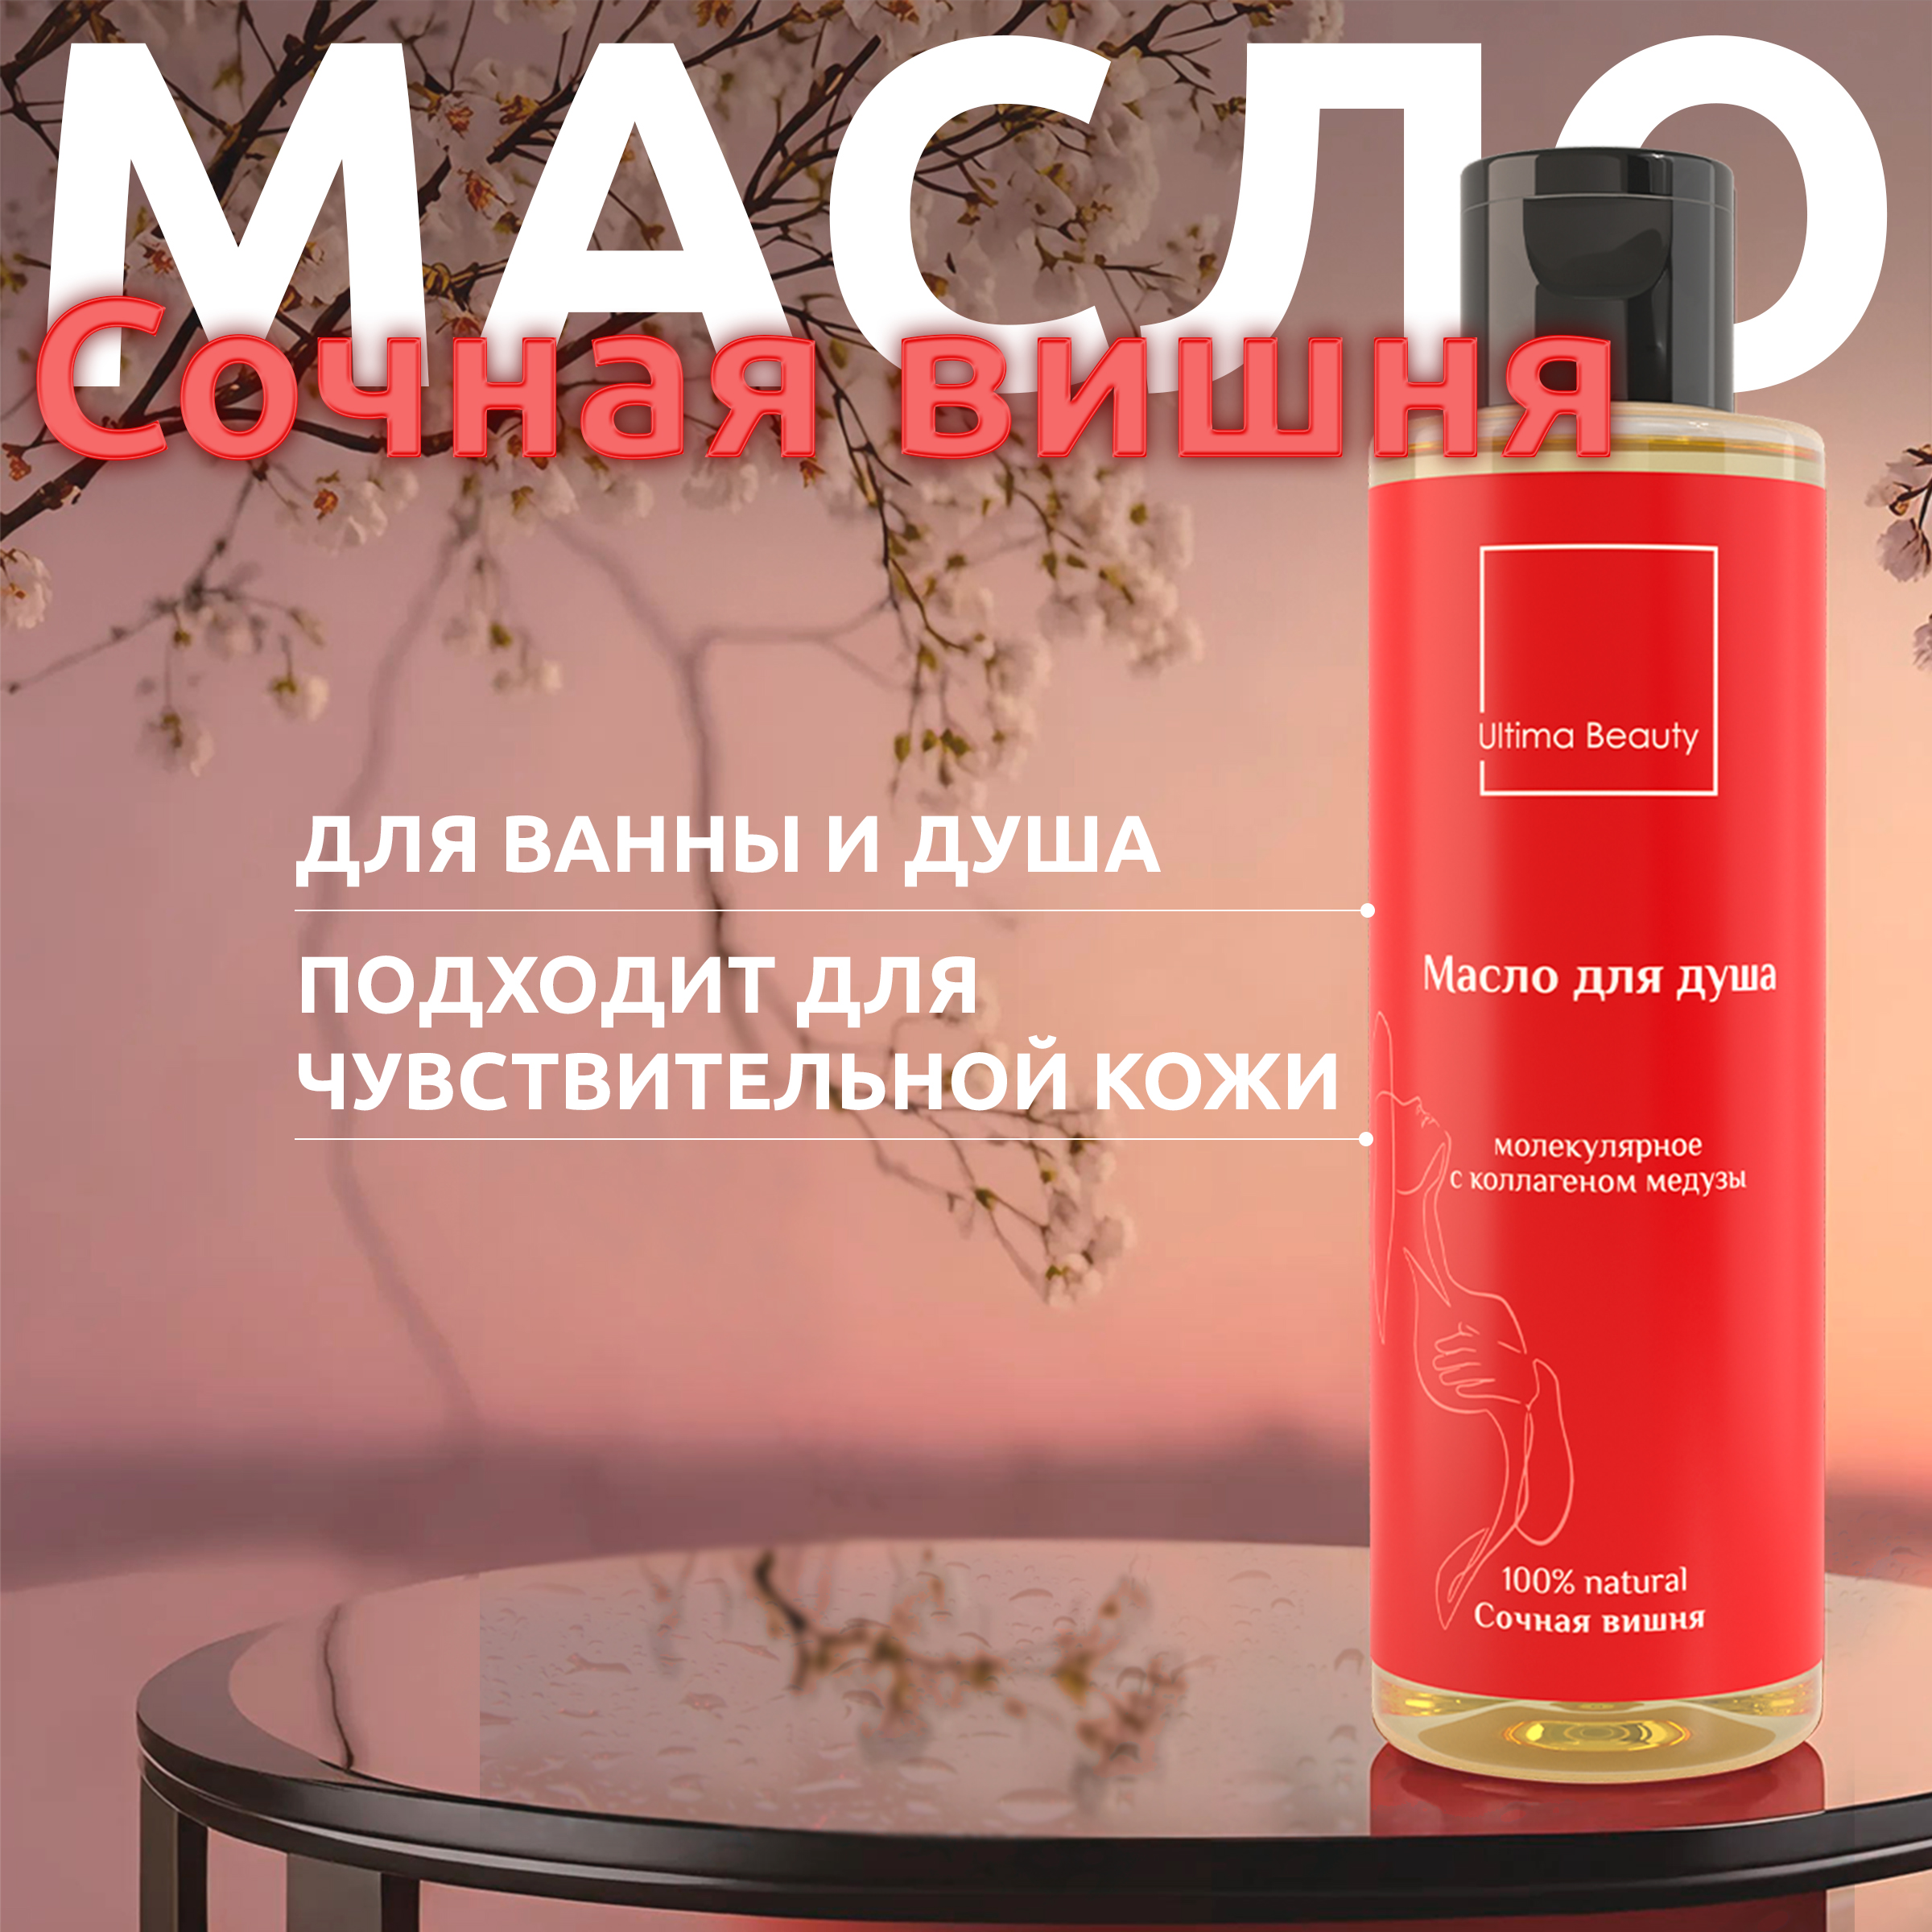 Гипоаллергенное масло для душа Ultima Beauty с ароматом сочной вишни rada russkikh гидрофильное масло для рук с ароматом вишни 100